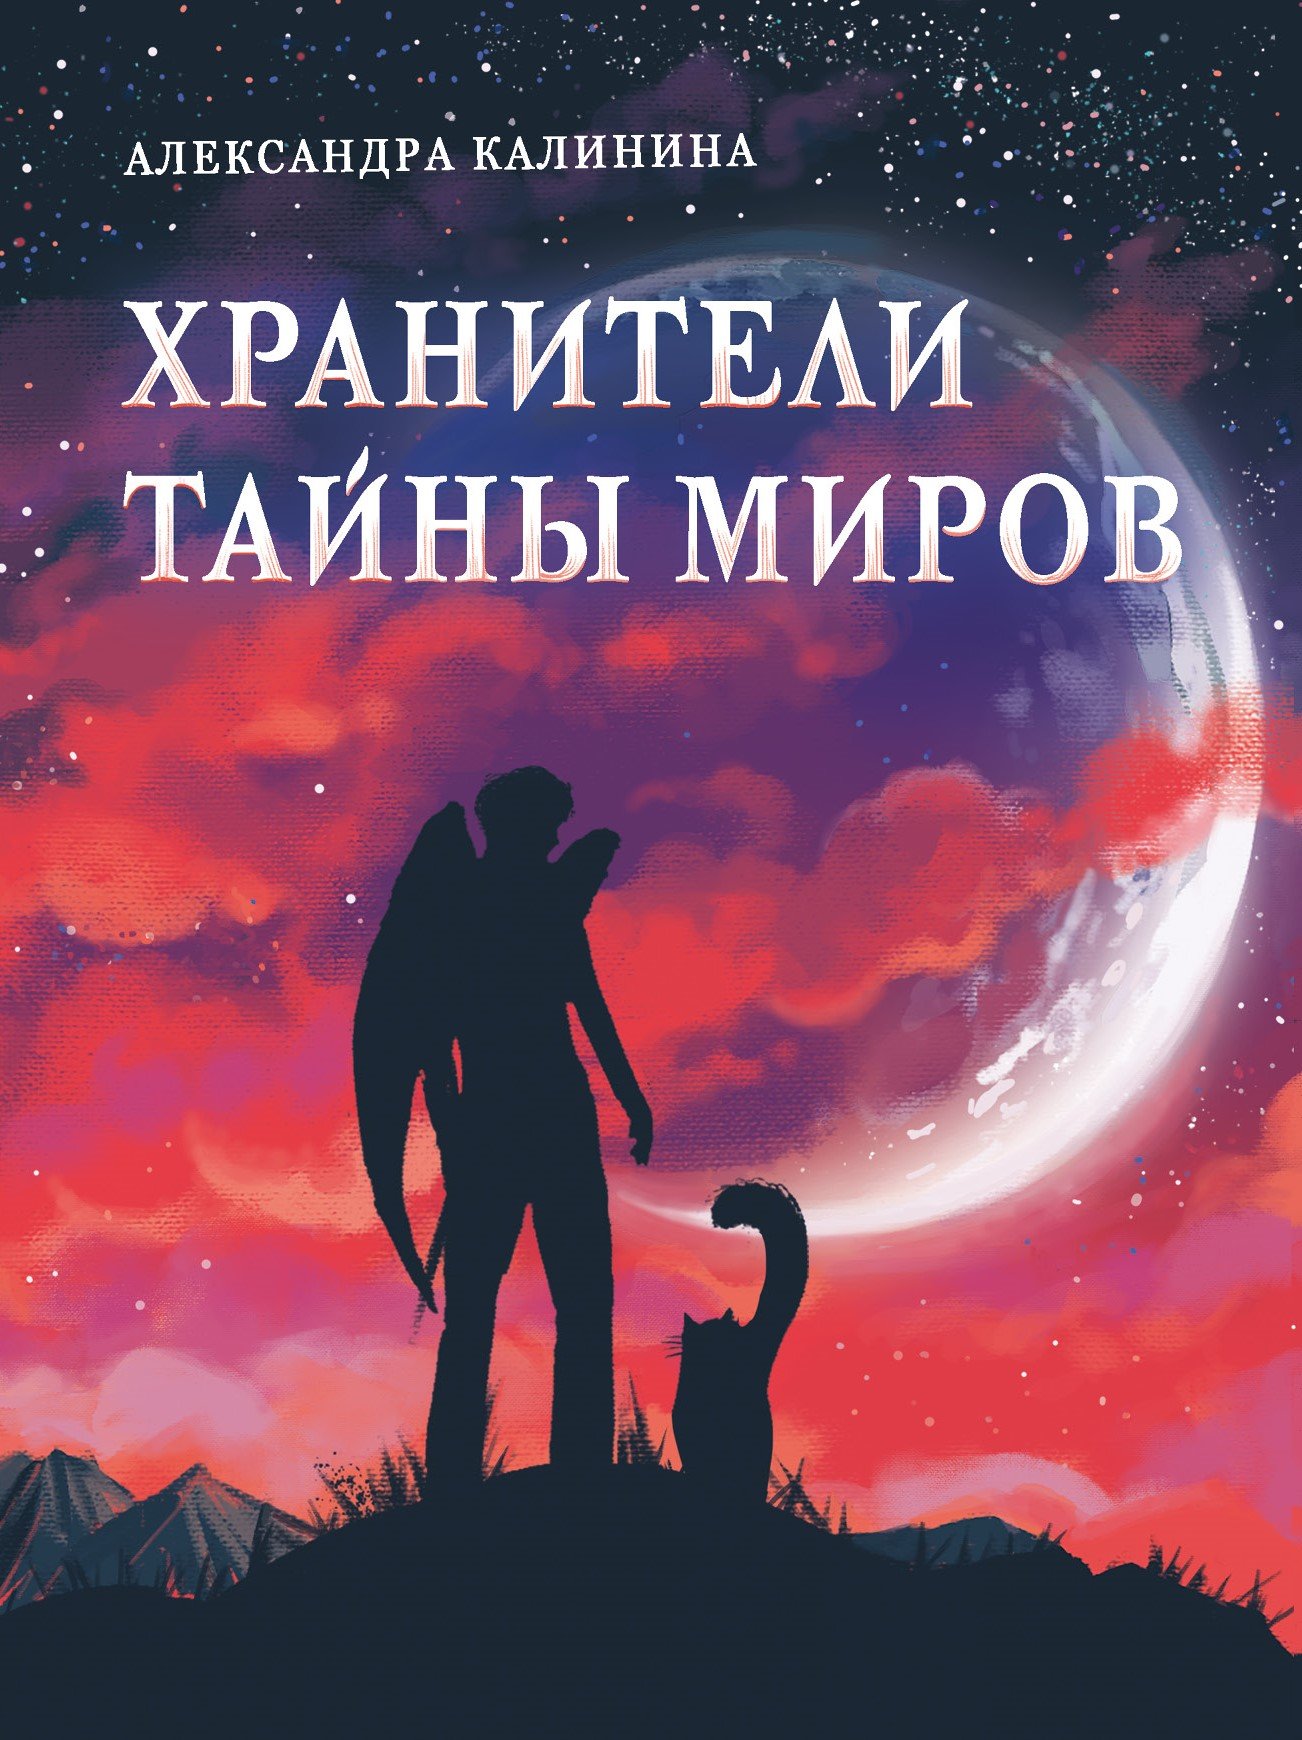 Калинина Александра Николаевна - Книга для подростков. Хранители тайны миров